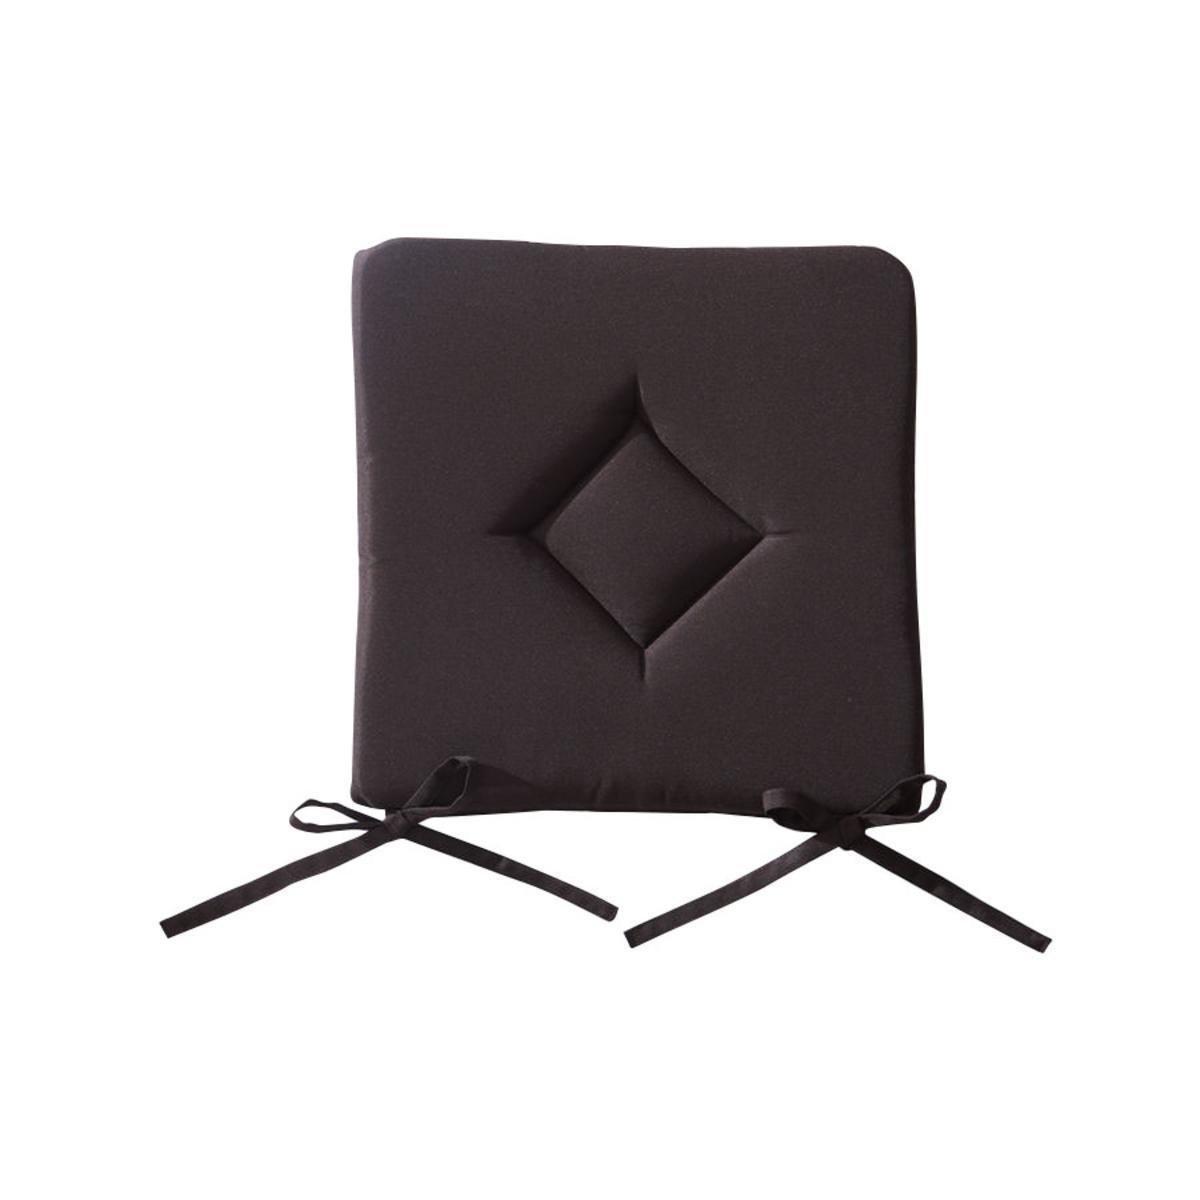 Galette de chaise en polyester - 40 cm x 40 cm x 3 cm - Marron